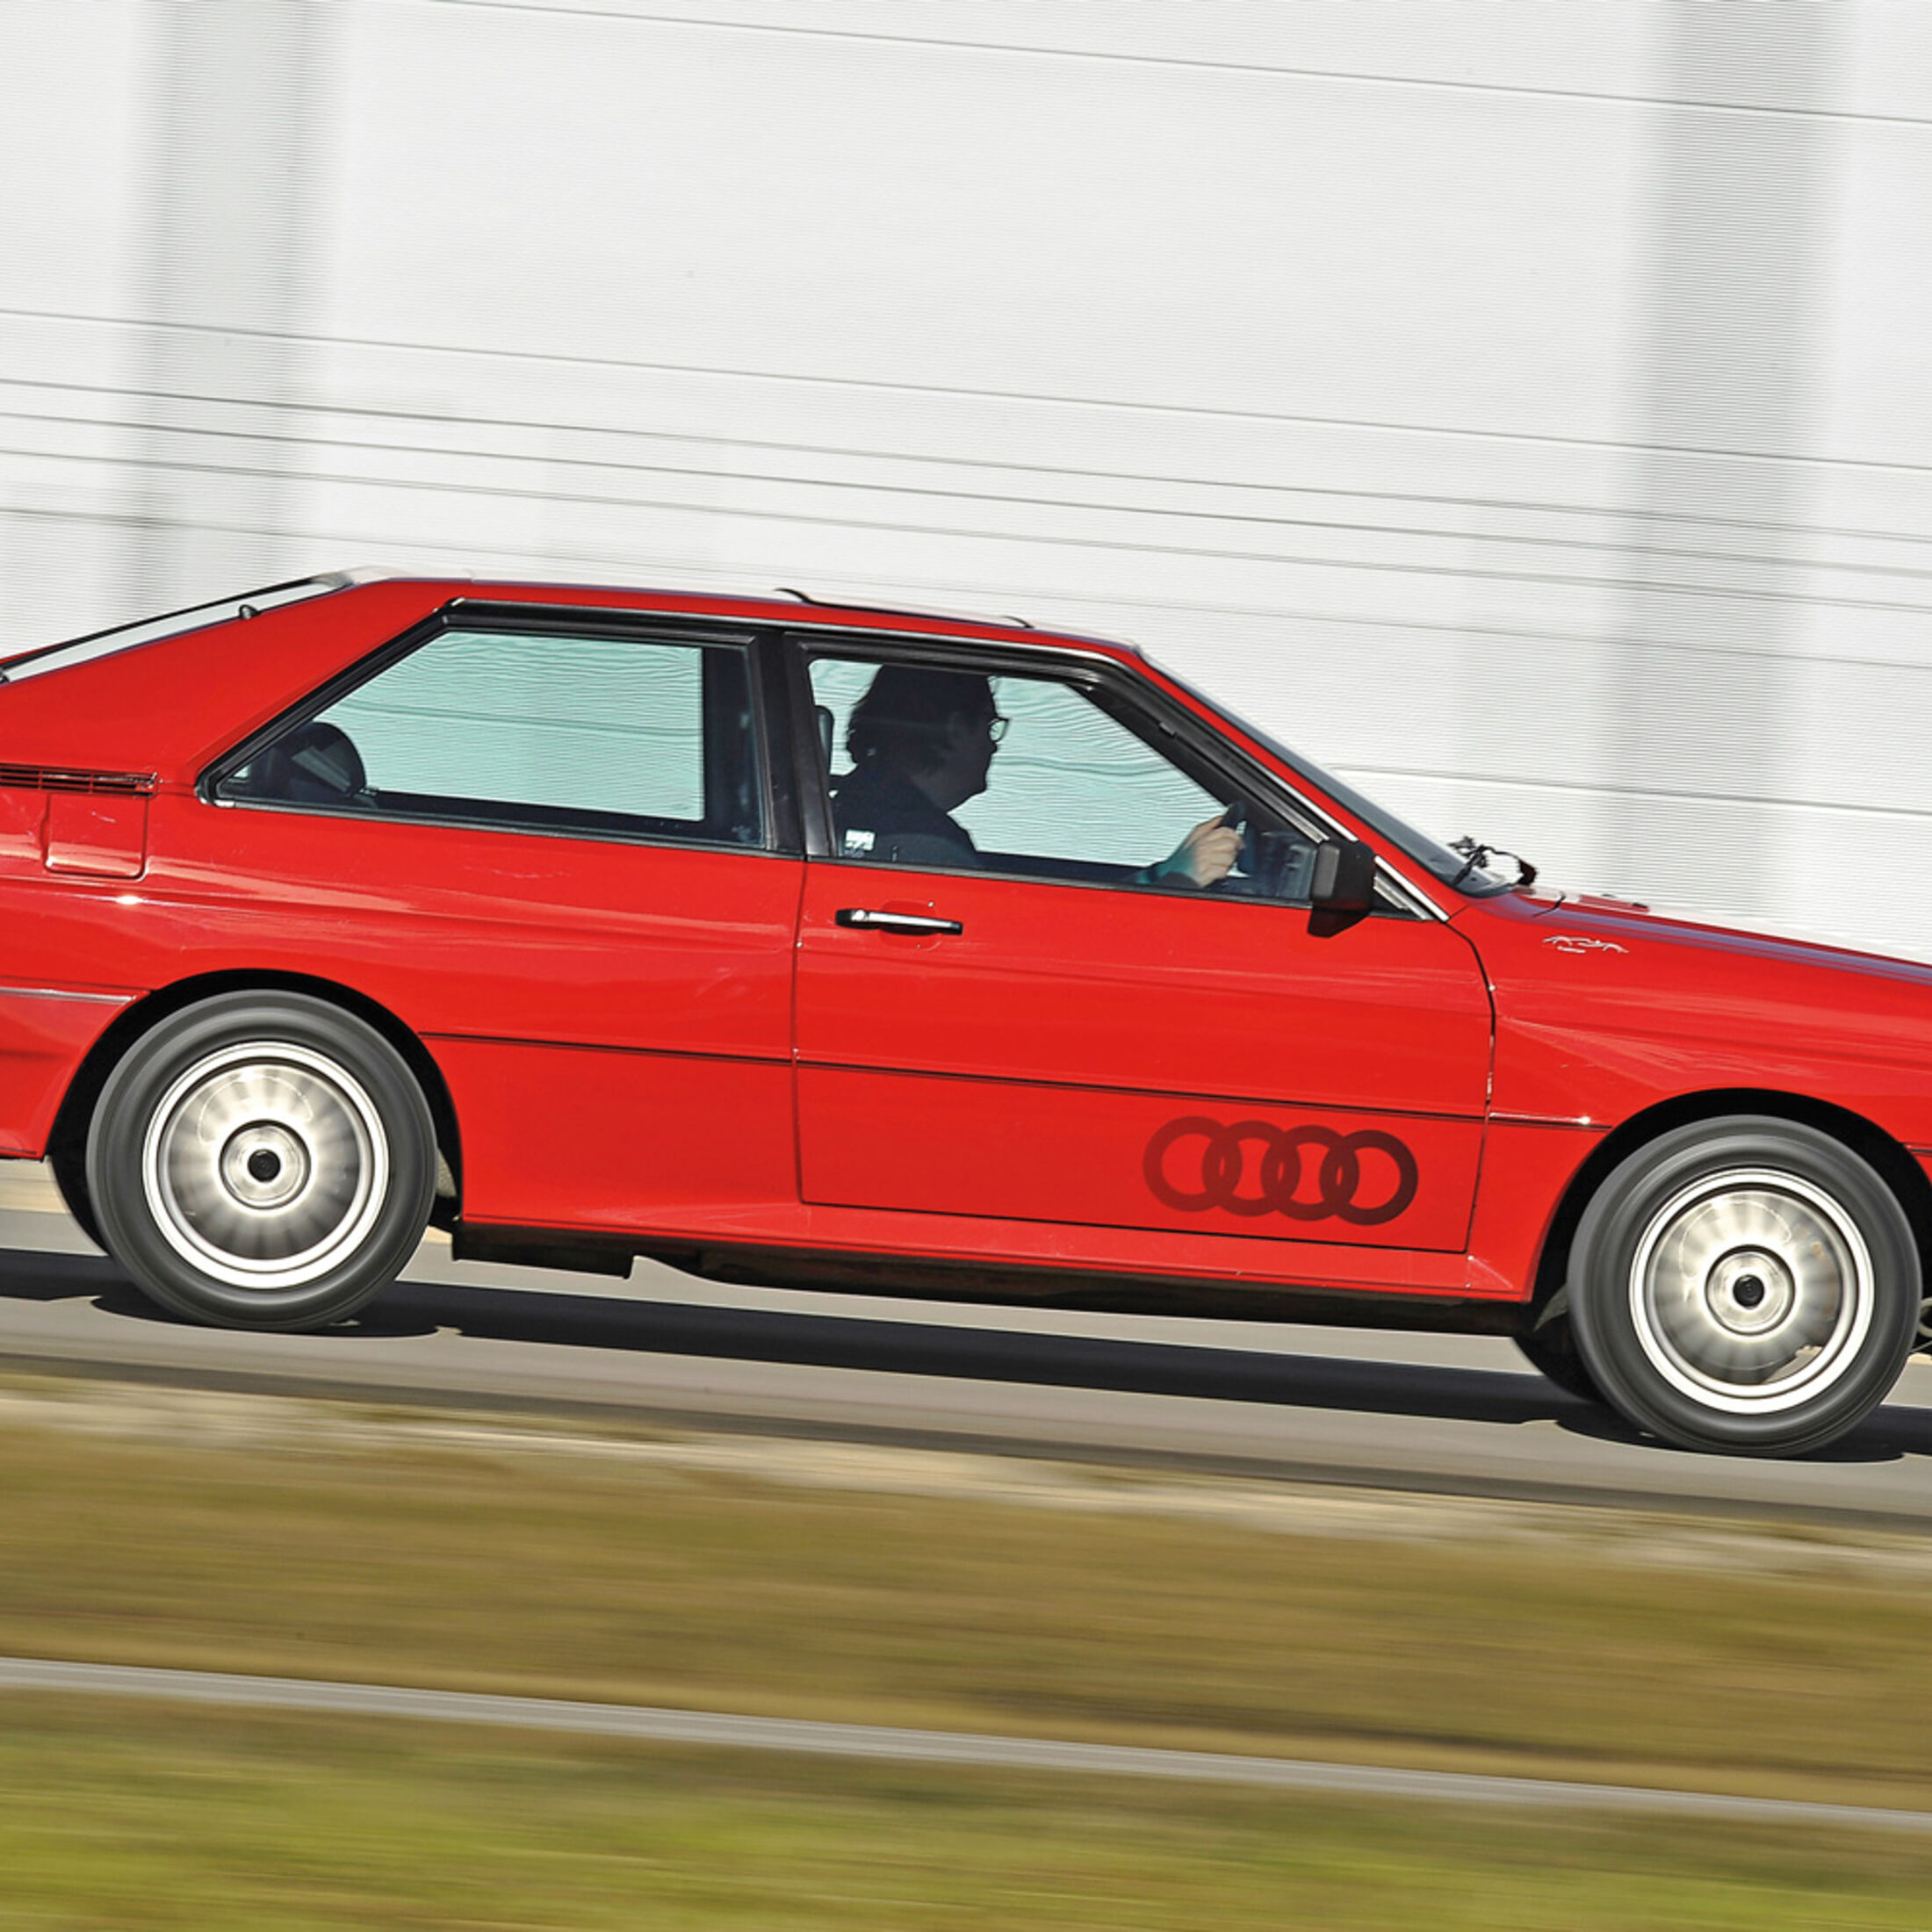 https://imgr1.auto-motor-und-sport.de/Audi-Quattro-Seitenansicht-jsonLd1x1-8232ae28-767460.jpg